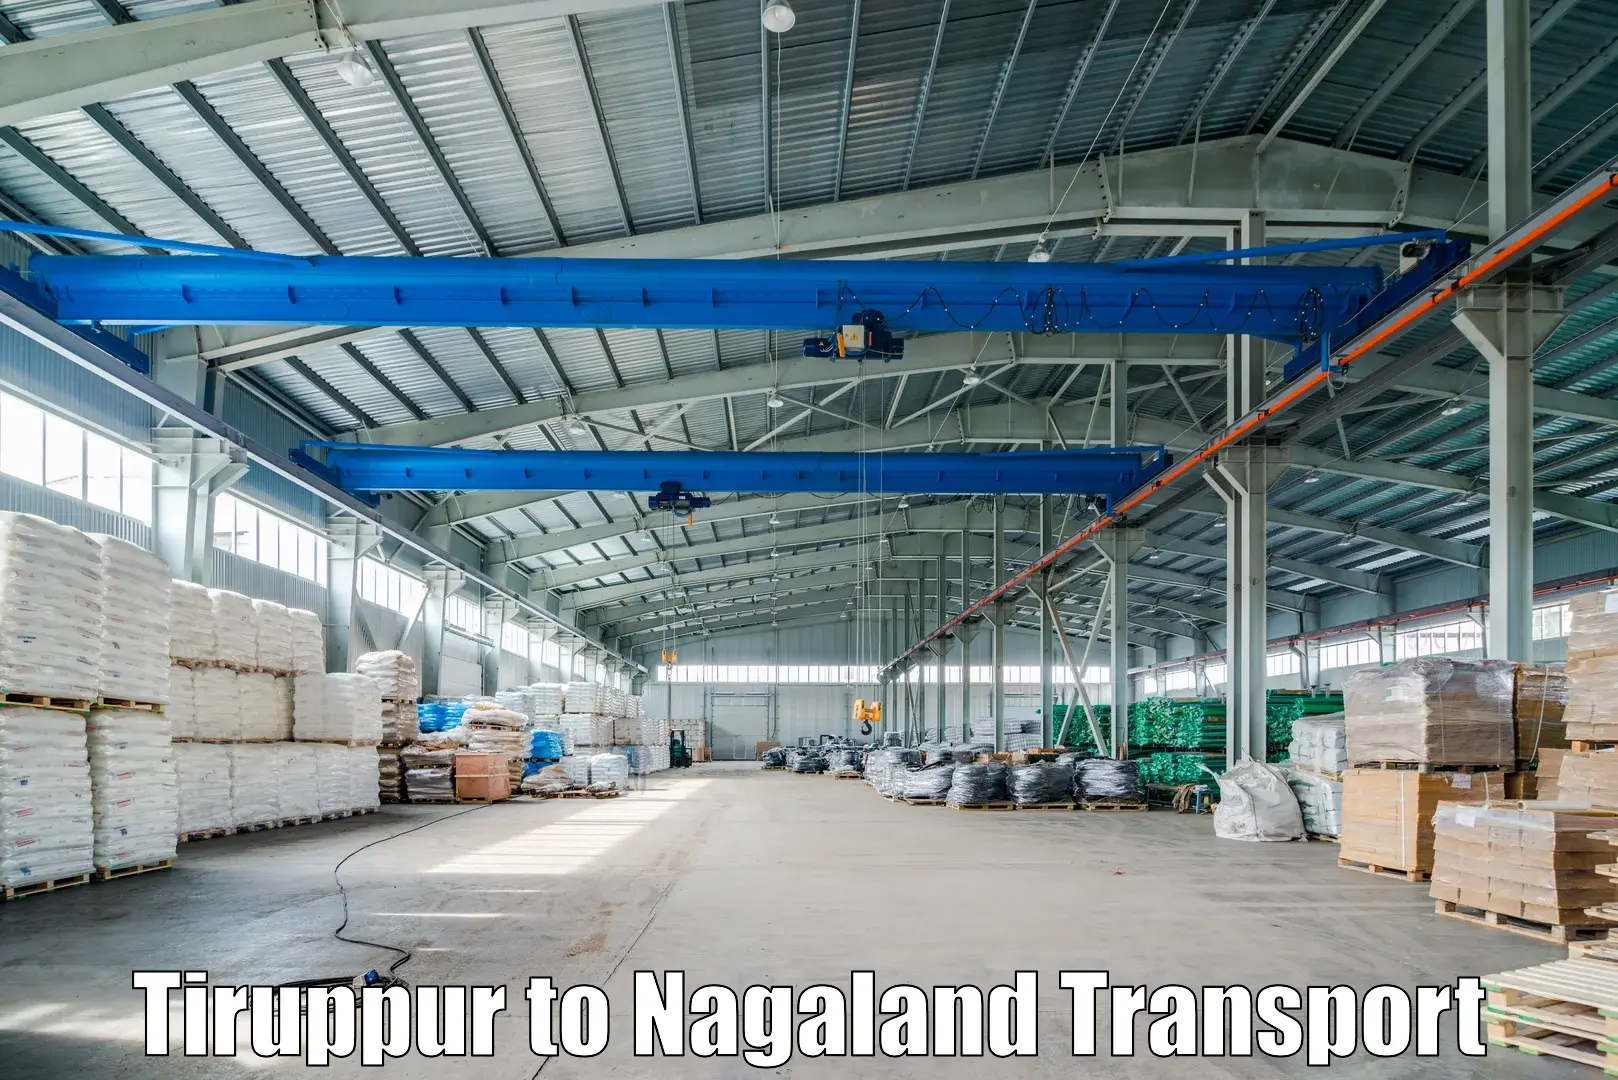 Shipping partner Tiruppur to Nagaland